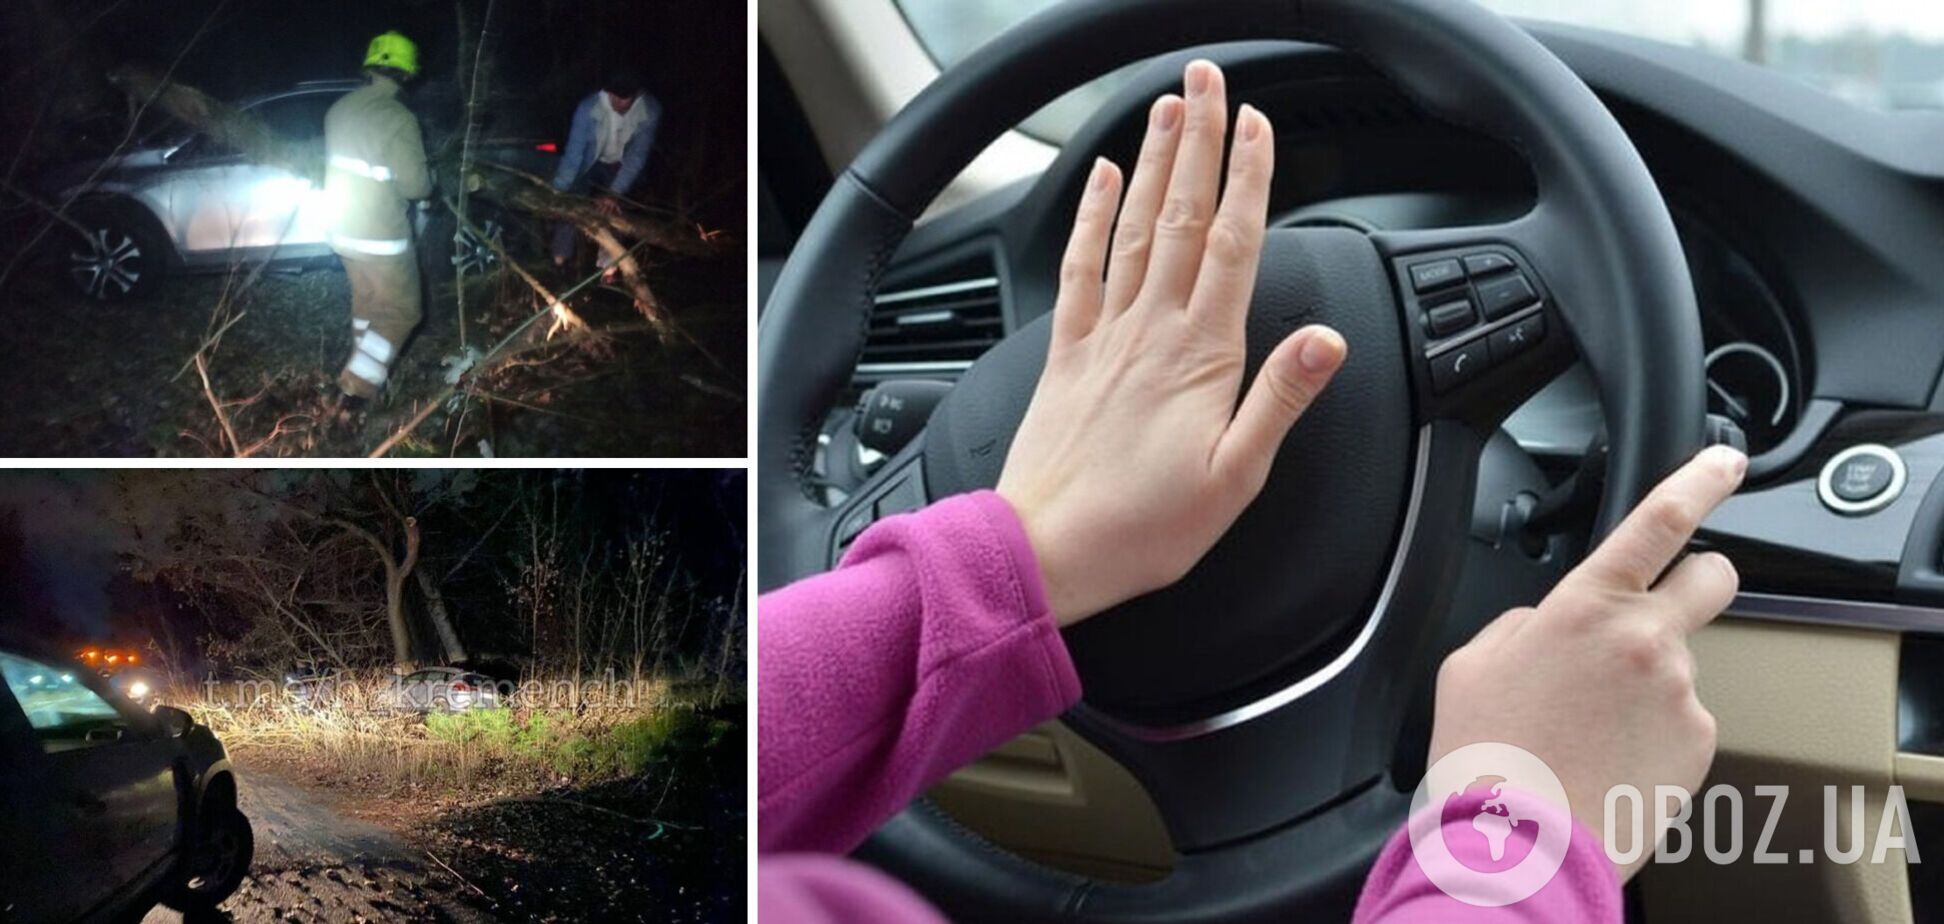 На Полтавщині 17-річна дівчина не впоралася з керуванням авто і влаштувала ДТП: є постраждалі. Фото і відео